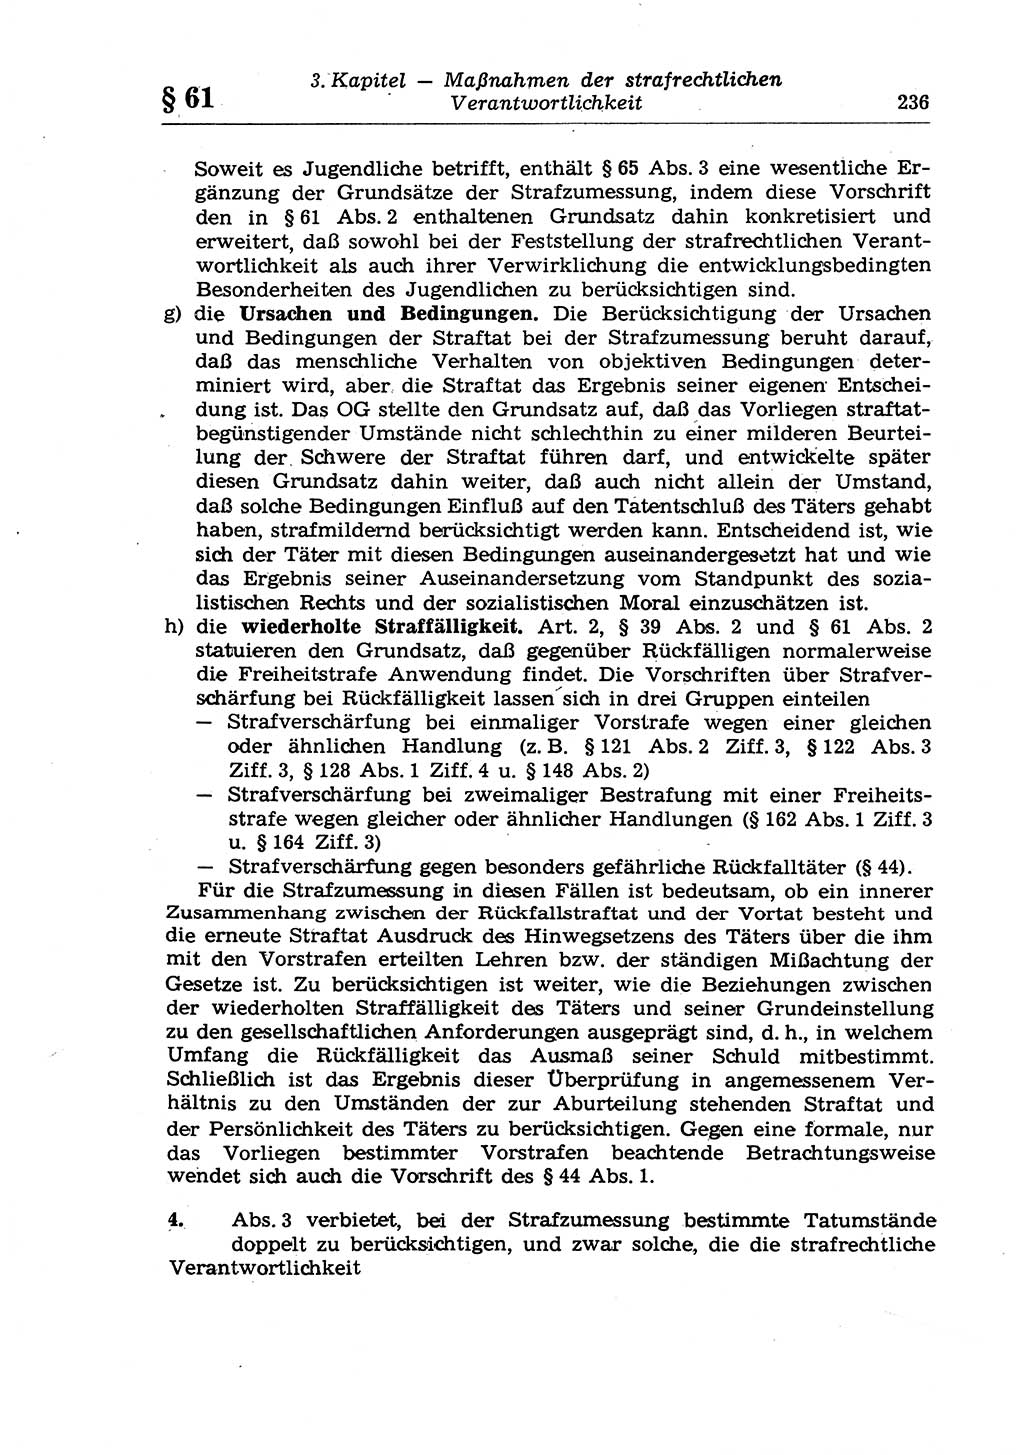 Strafrecht der Deutschen Demokratischen Republik (DDR), Lehrkommentar zum Strafgesetzbuch (StGB), Allgemeiner Teil 1970, Seite 236 (Strafr. DDR Lehrkomm. StGB AT 1970, S. 236)